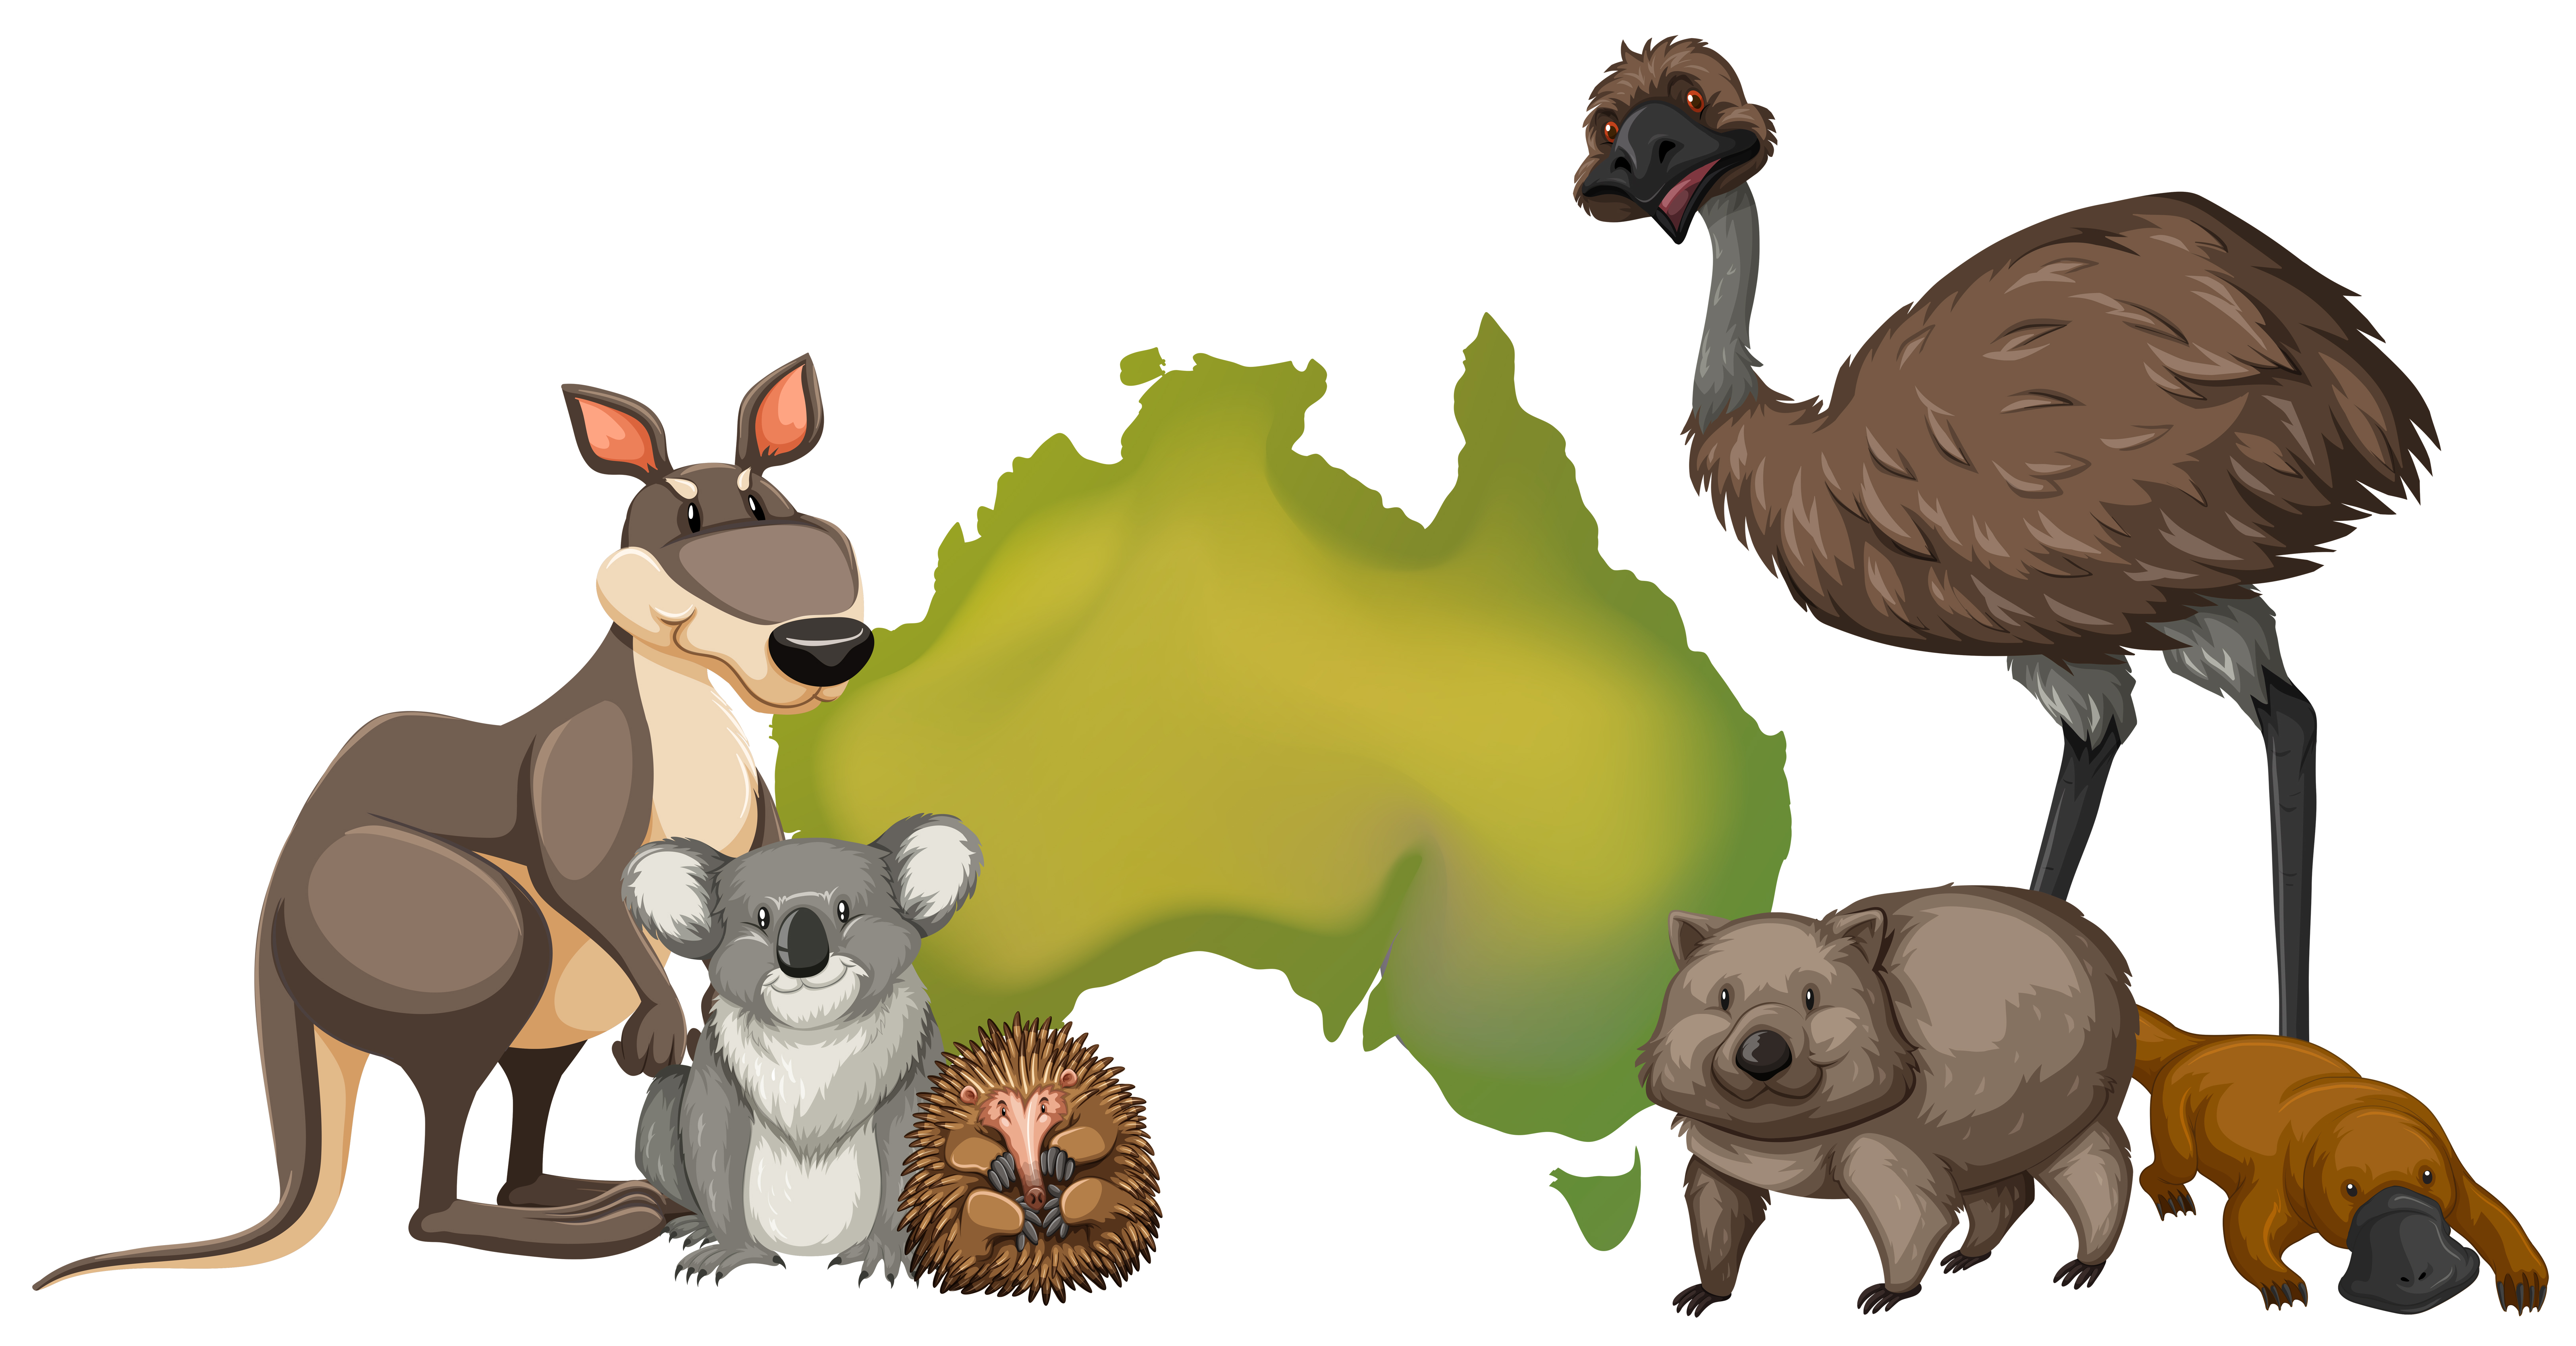 Download Wild animals in Australia 372348 - Download Free Vectors, Clipart Graphics & Vector Art